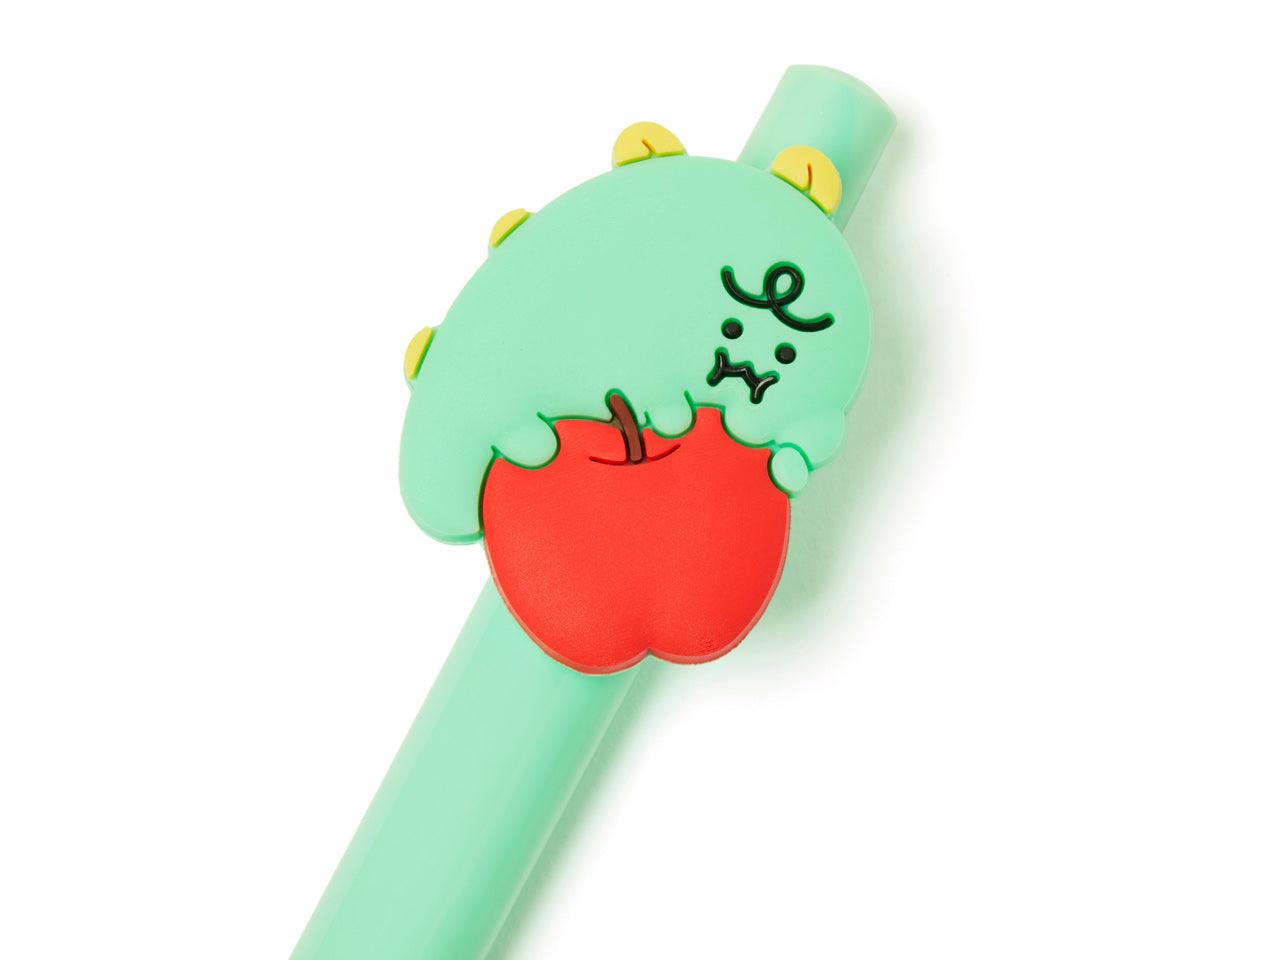 Kakao Friends Jordy Apple Figure Gelpen Pen 原珠筆 - SOUL SIMPLE HK